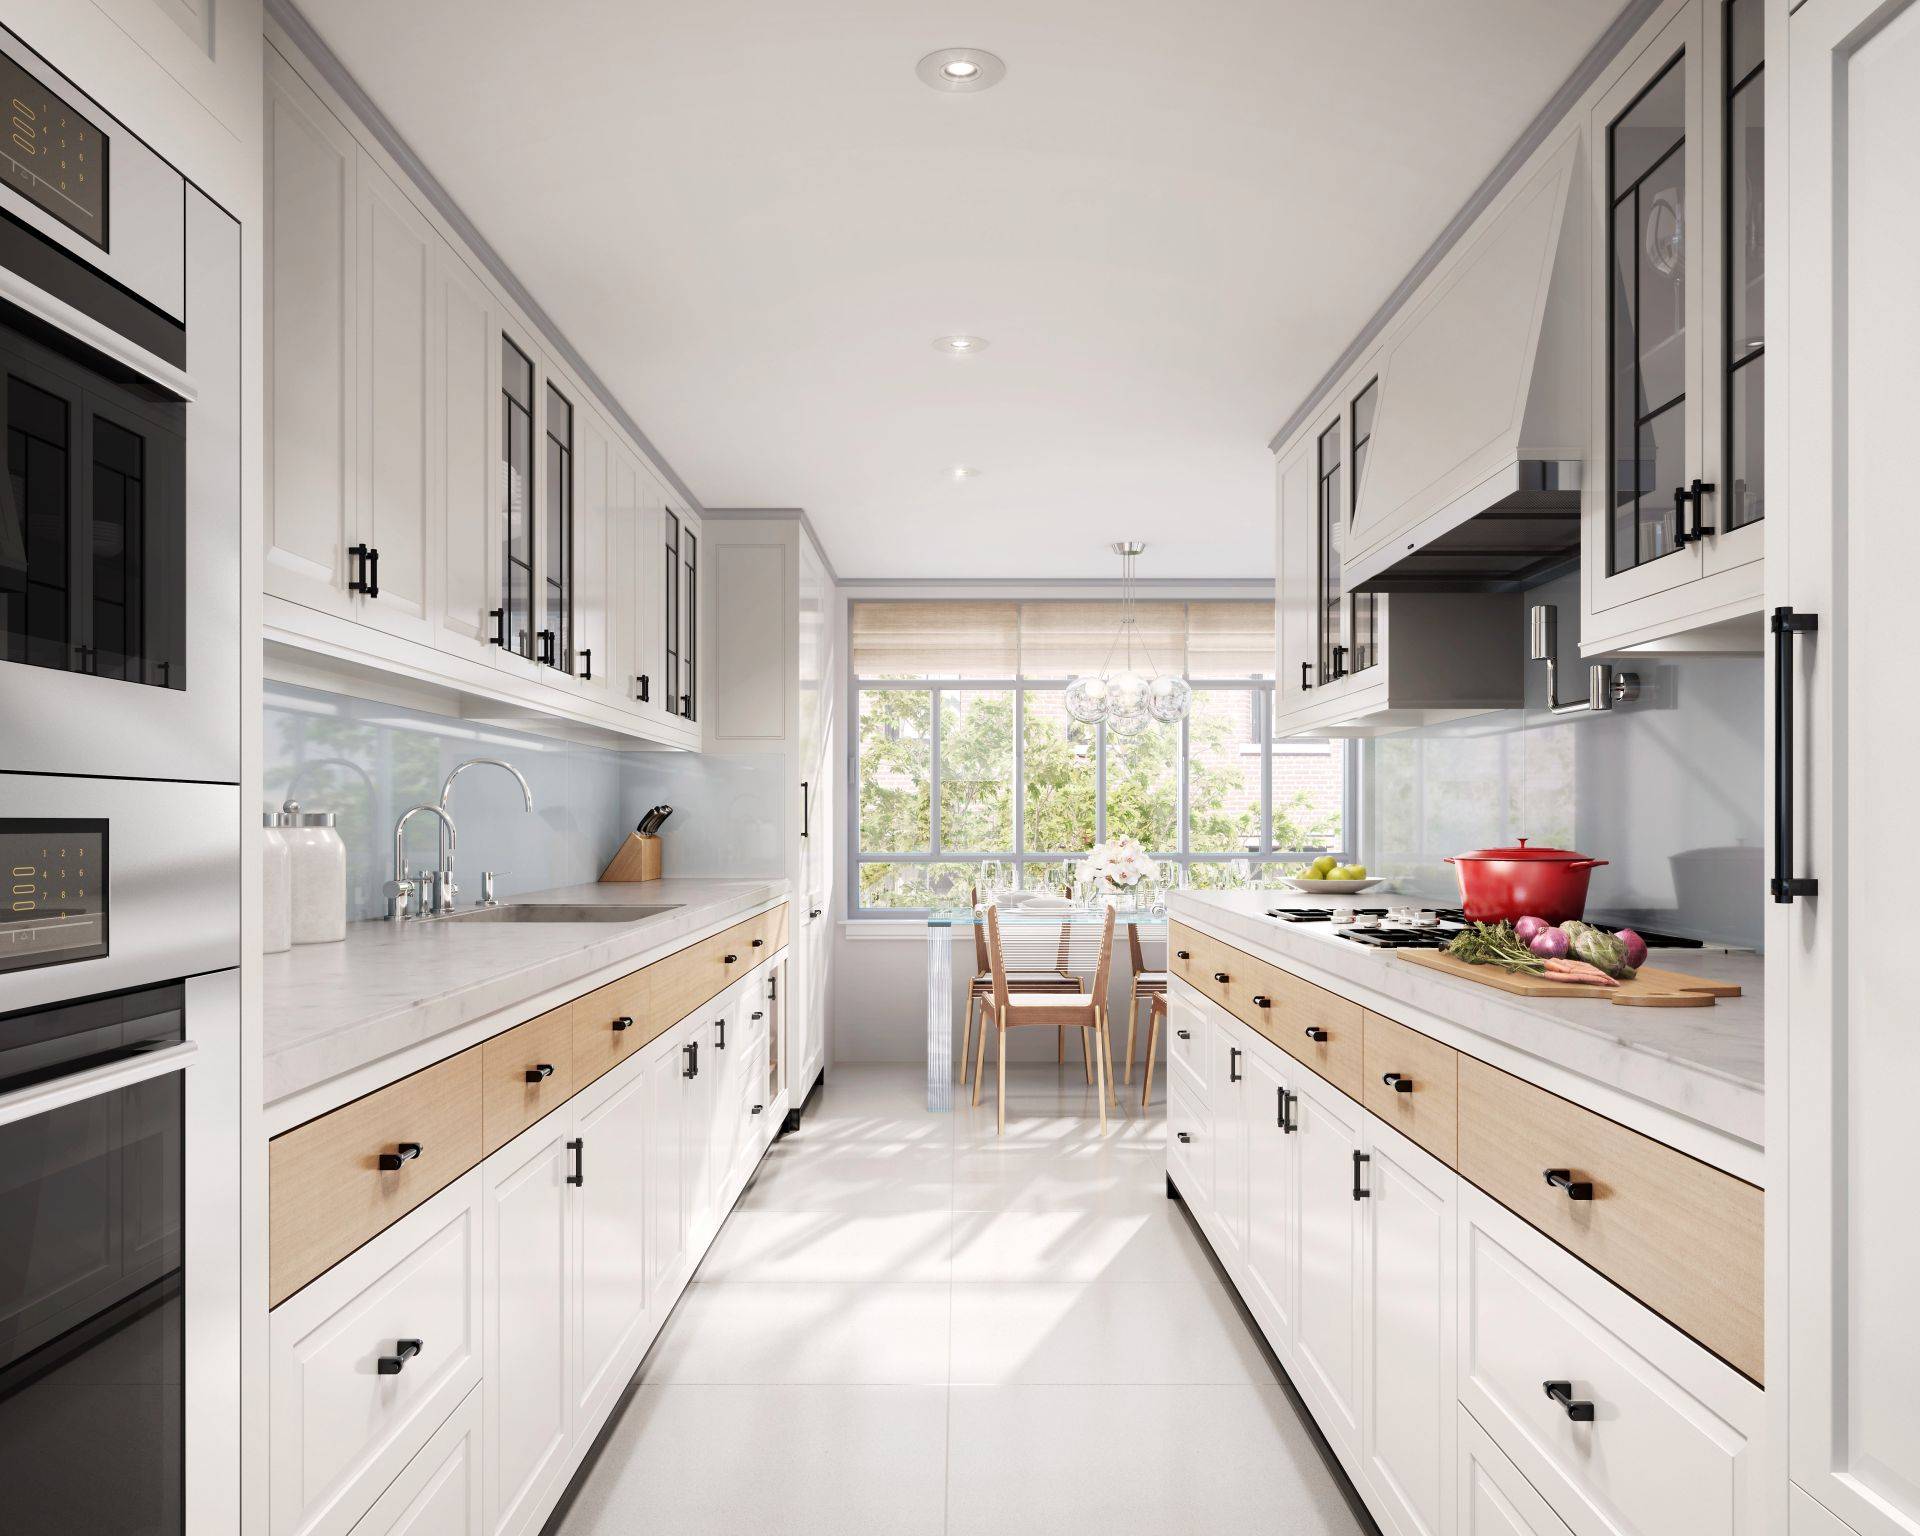 Дизайн кухни 12 кв.м. - фото, красивые интерьеры кухонь 3 на 4, идеи ремонта